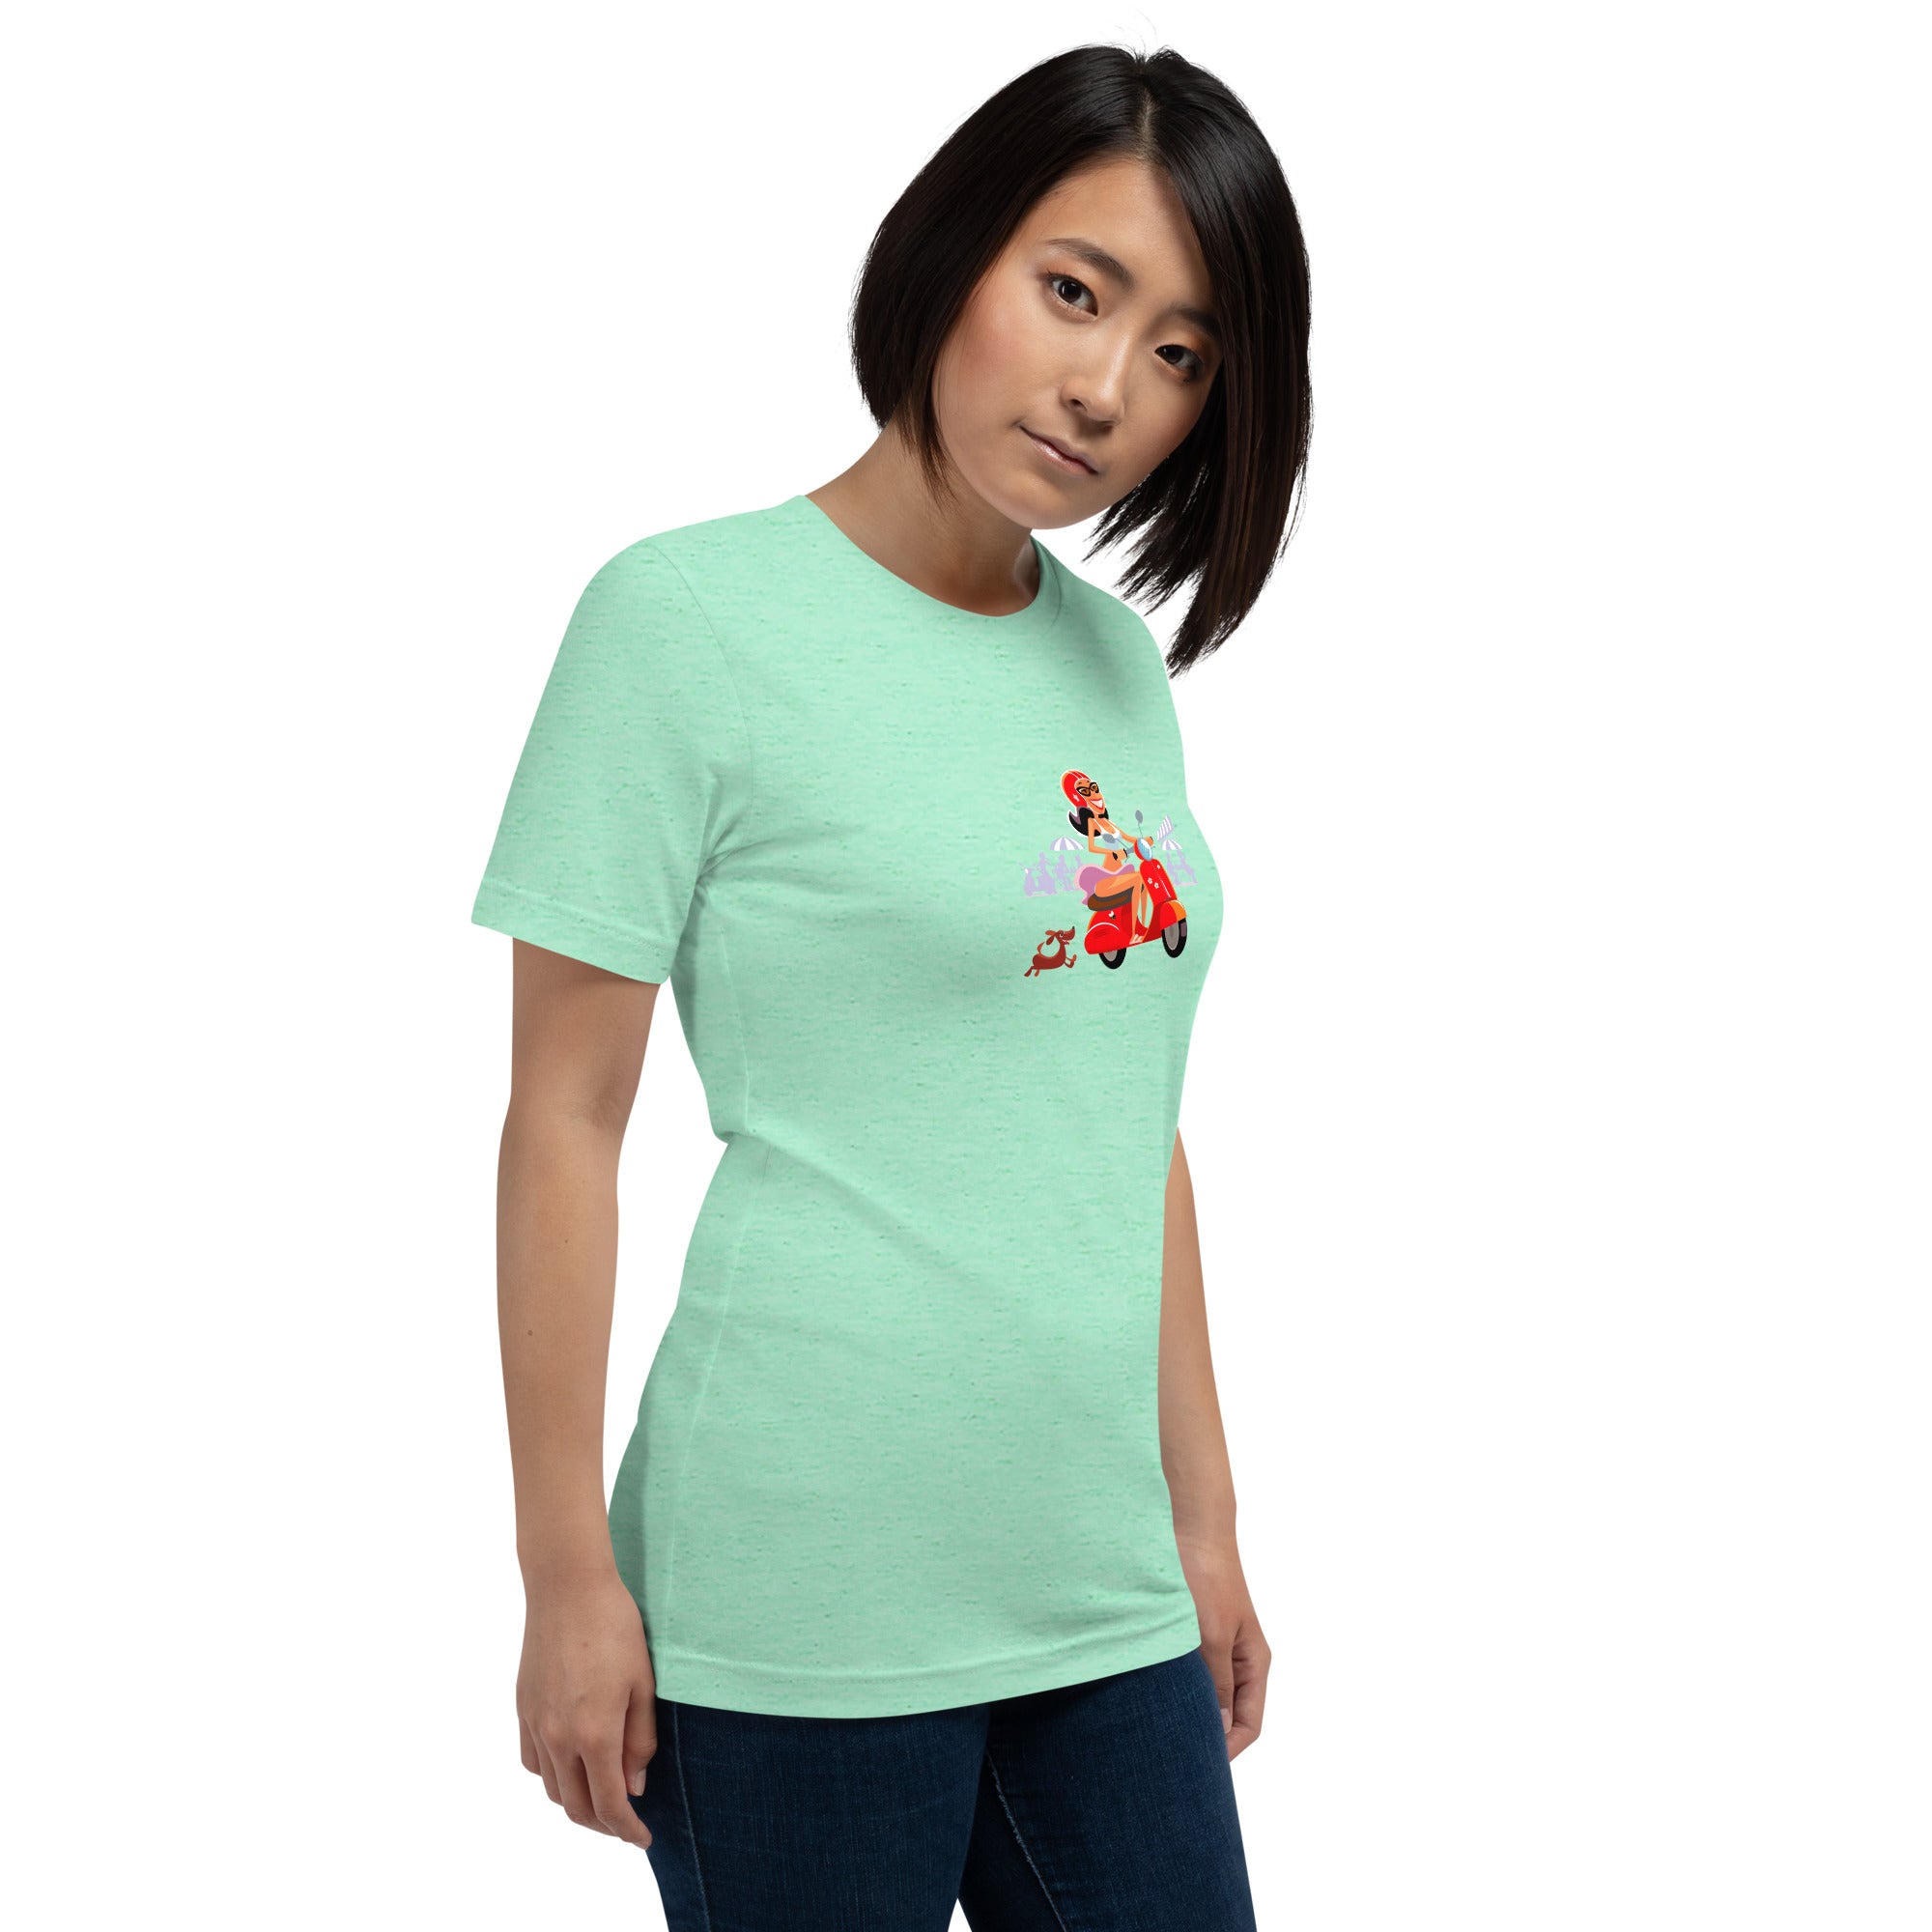 T-shirt en coton unisexe Vespa Girl in St Tropez sur couleurs chinées claires